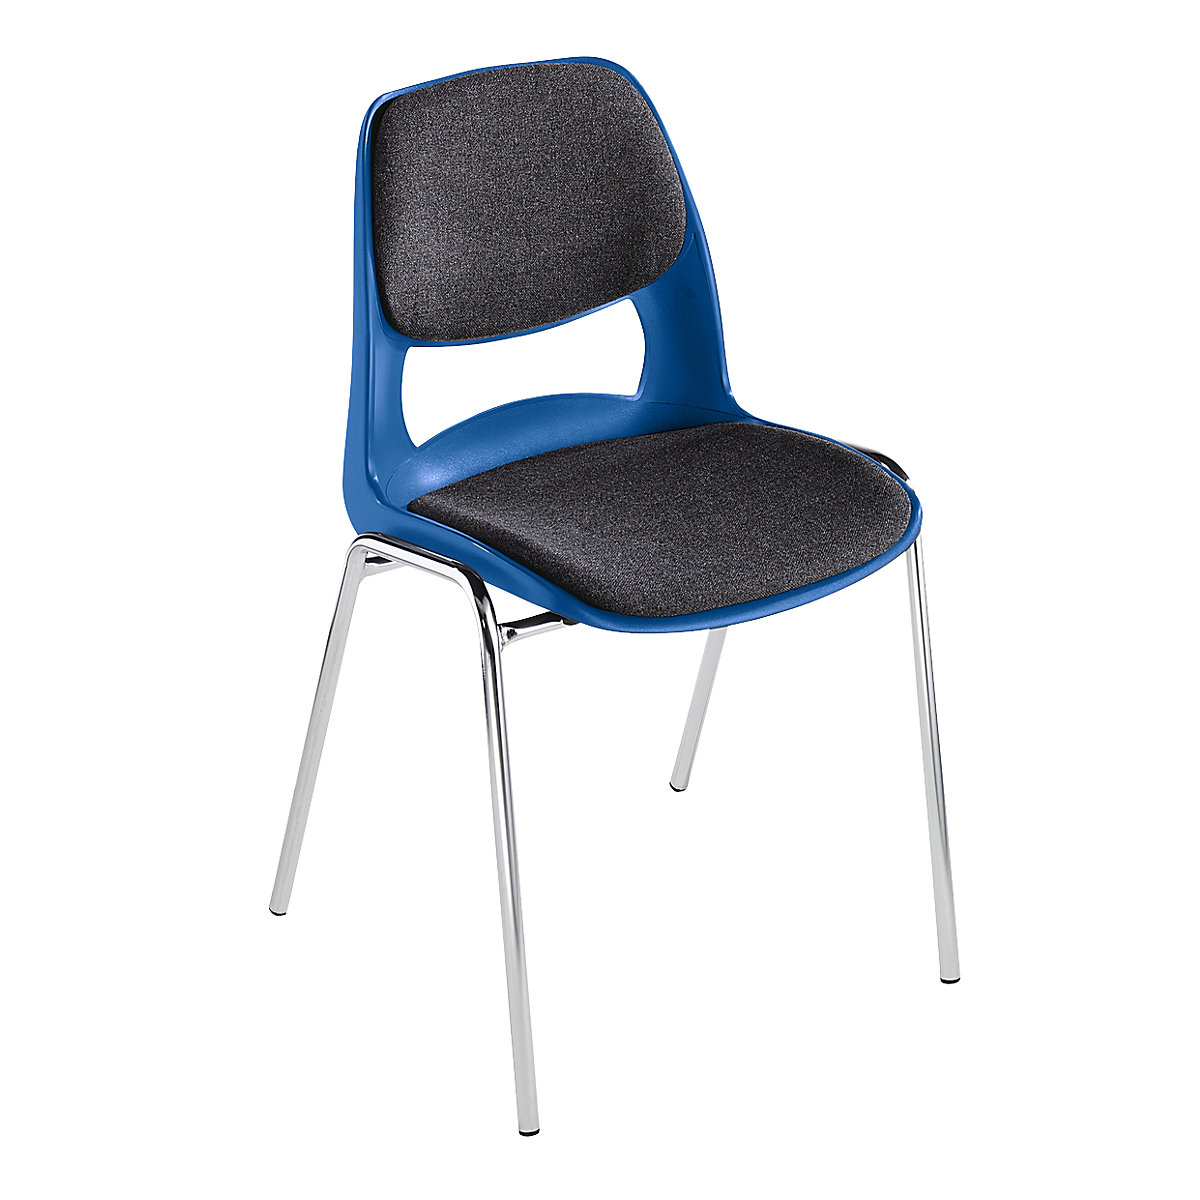 Krzesło z siedziskiem z polipropylenu